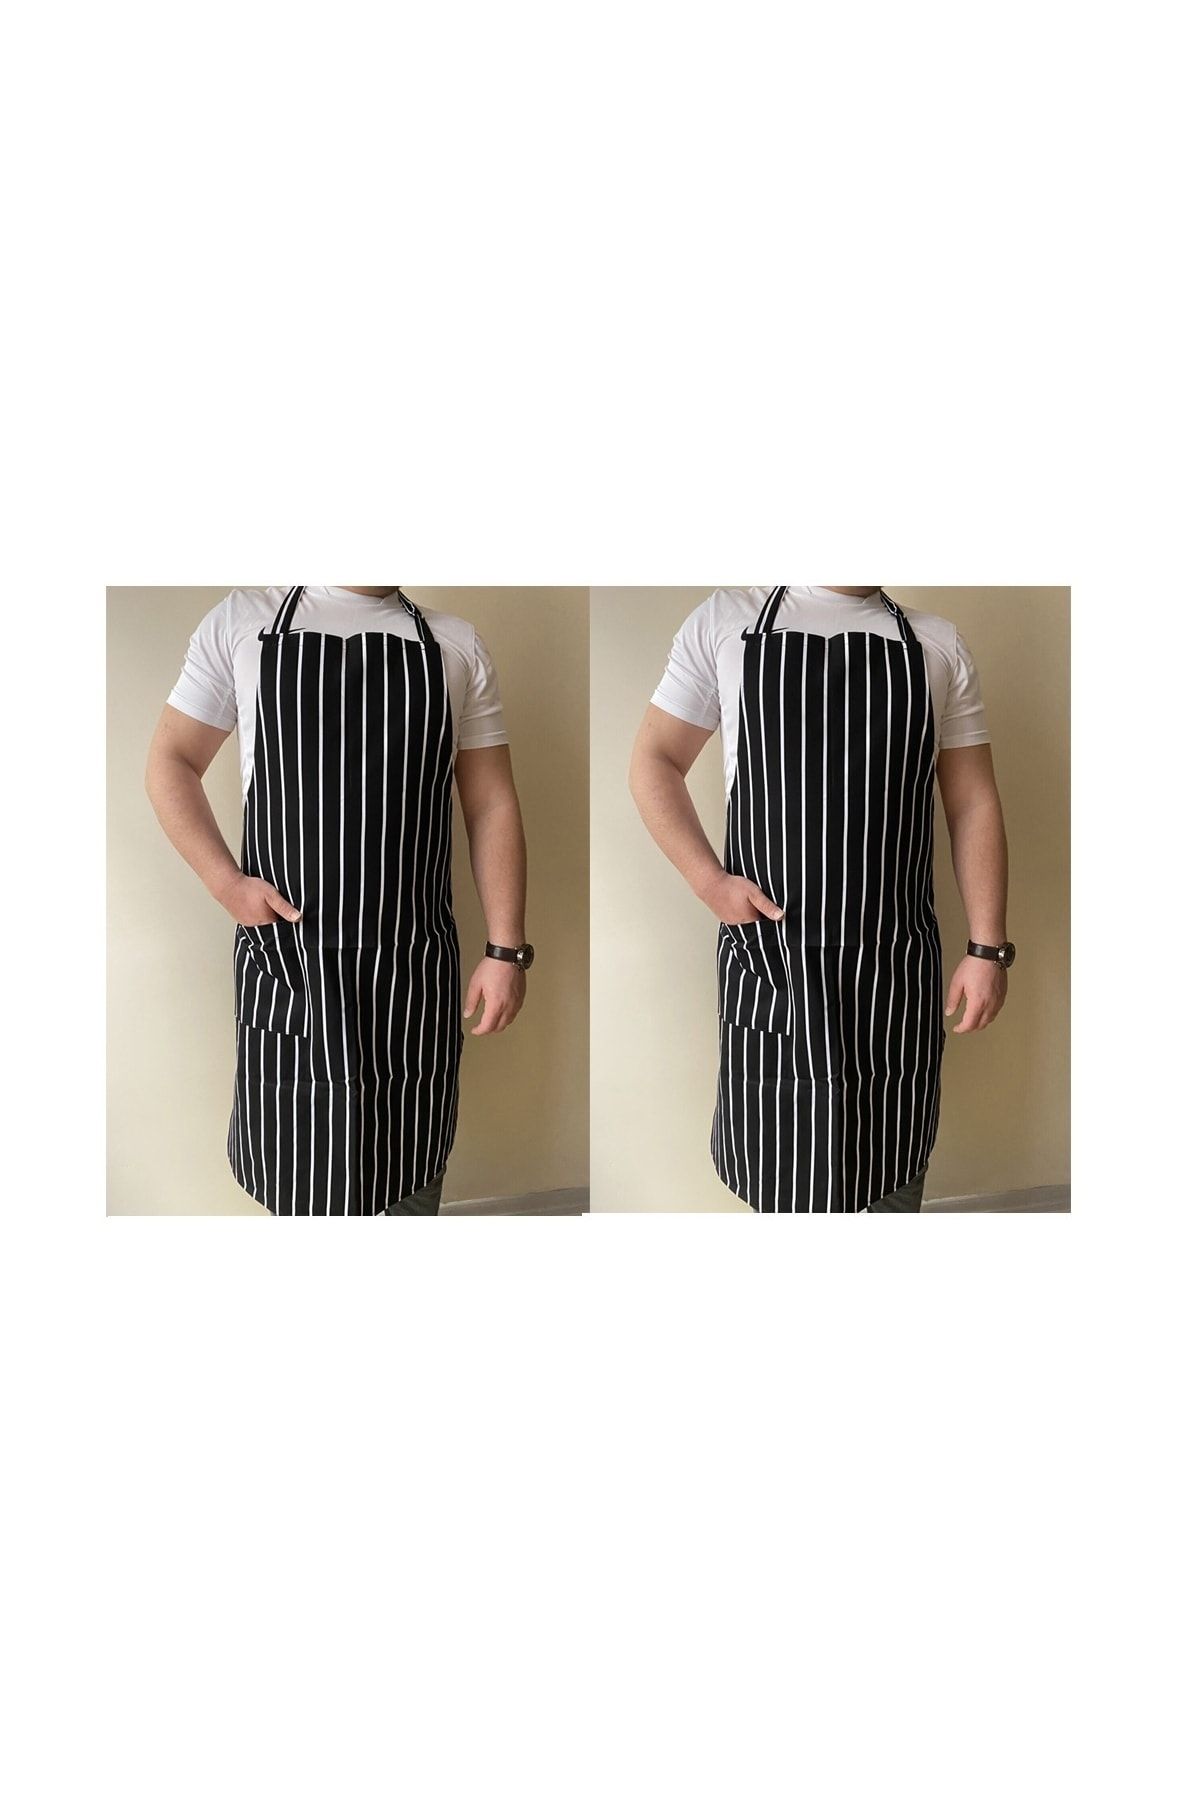 Umut Tekstil 2 Adet Mutfak Önlüğü Garson Aşçı Şef Servis Boydan Askılı Cepli Unisex Siyah Beyaz Çizgili